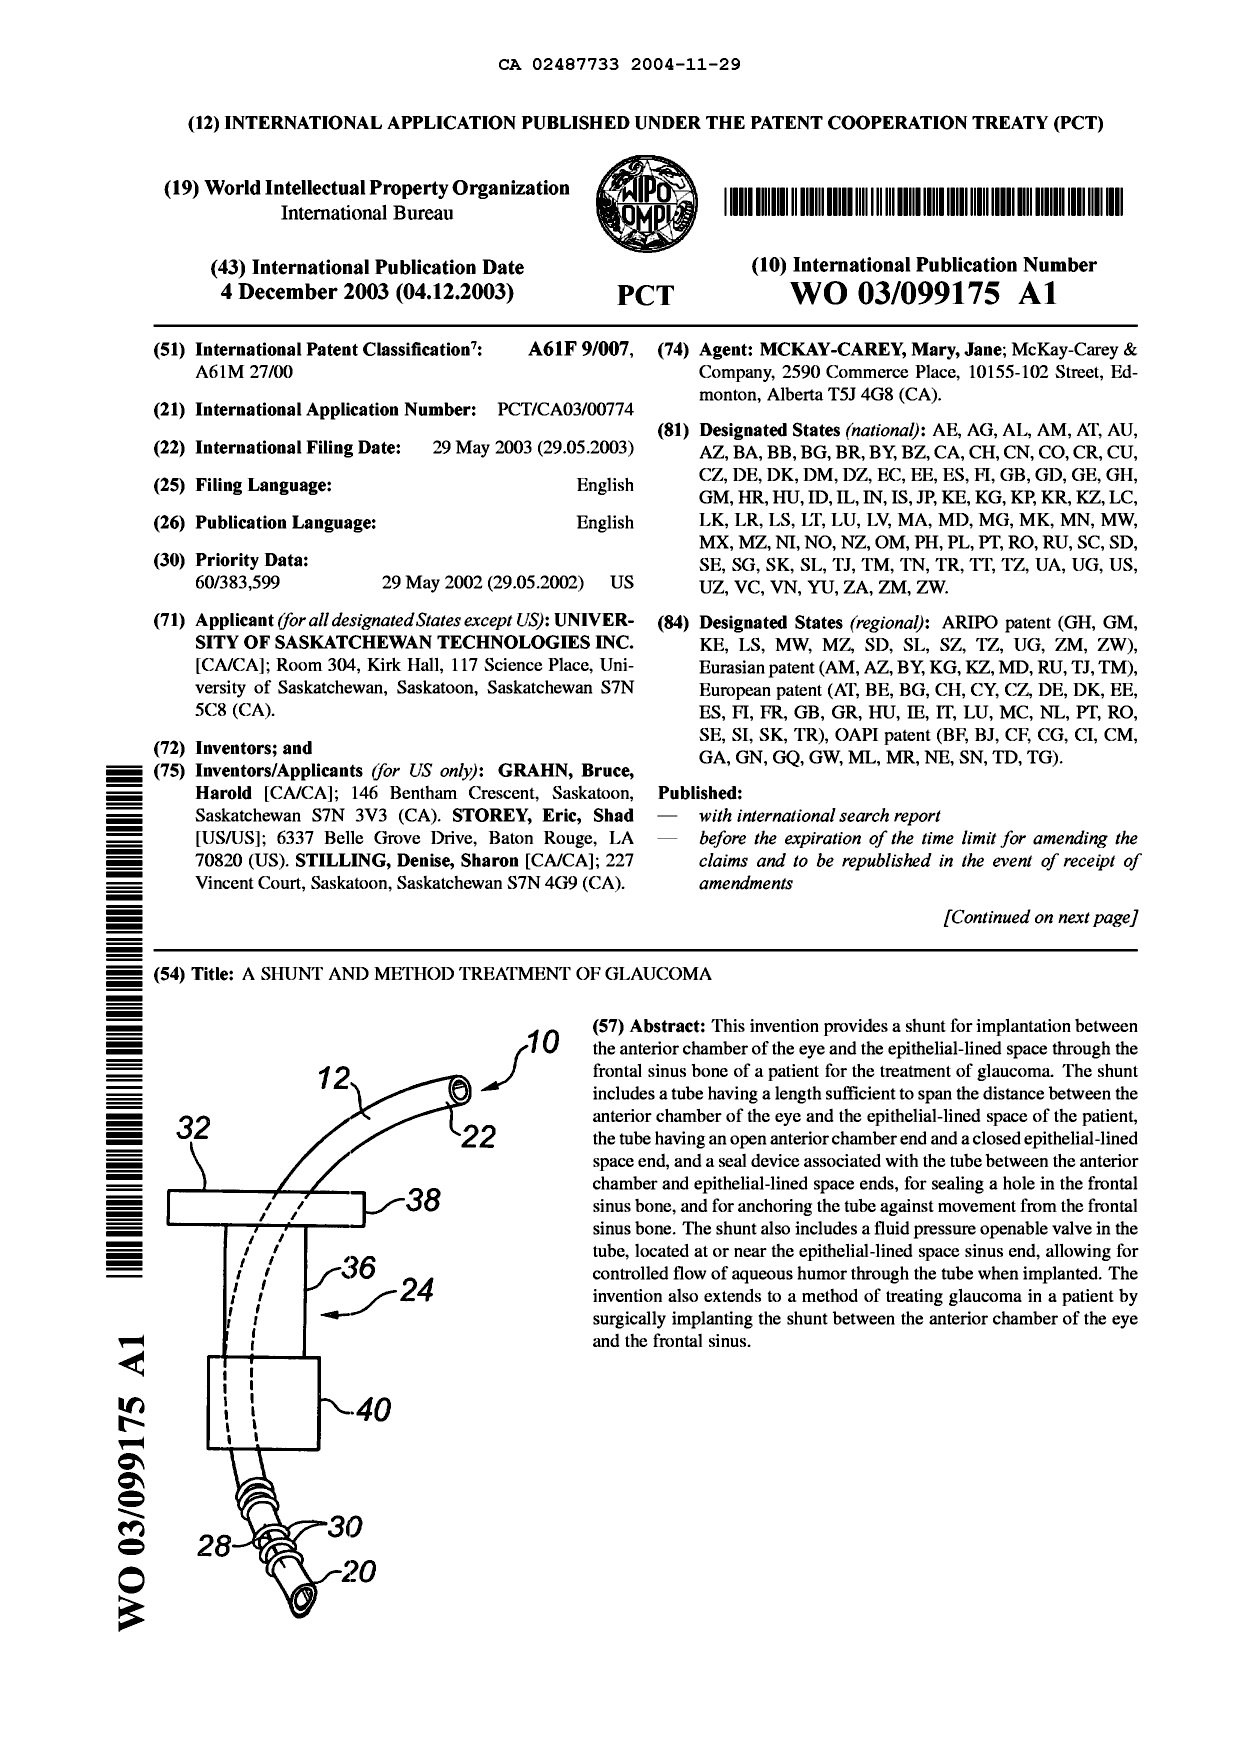 Document de brevet canadien 2487733. Abrégé 20041129. Image 1 de 2